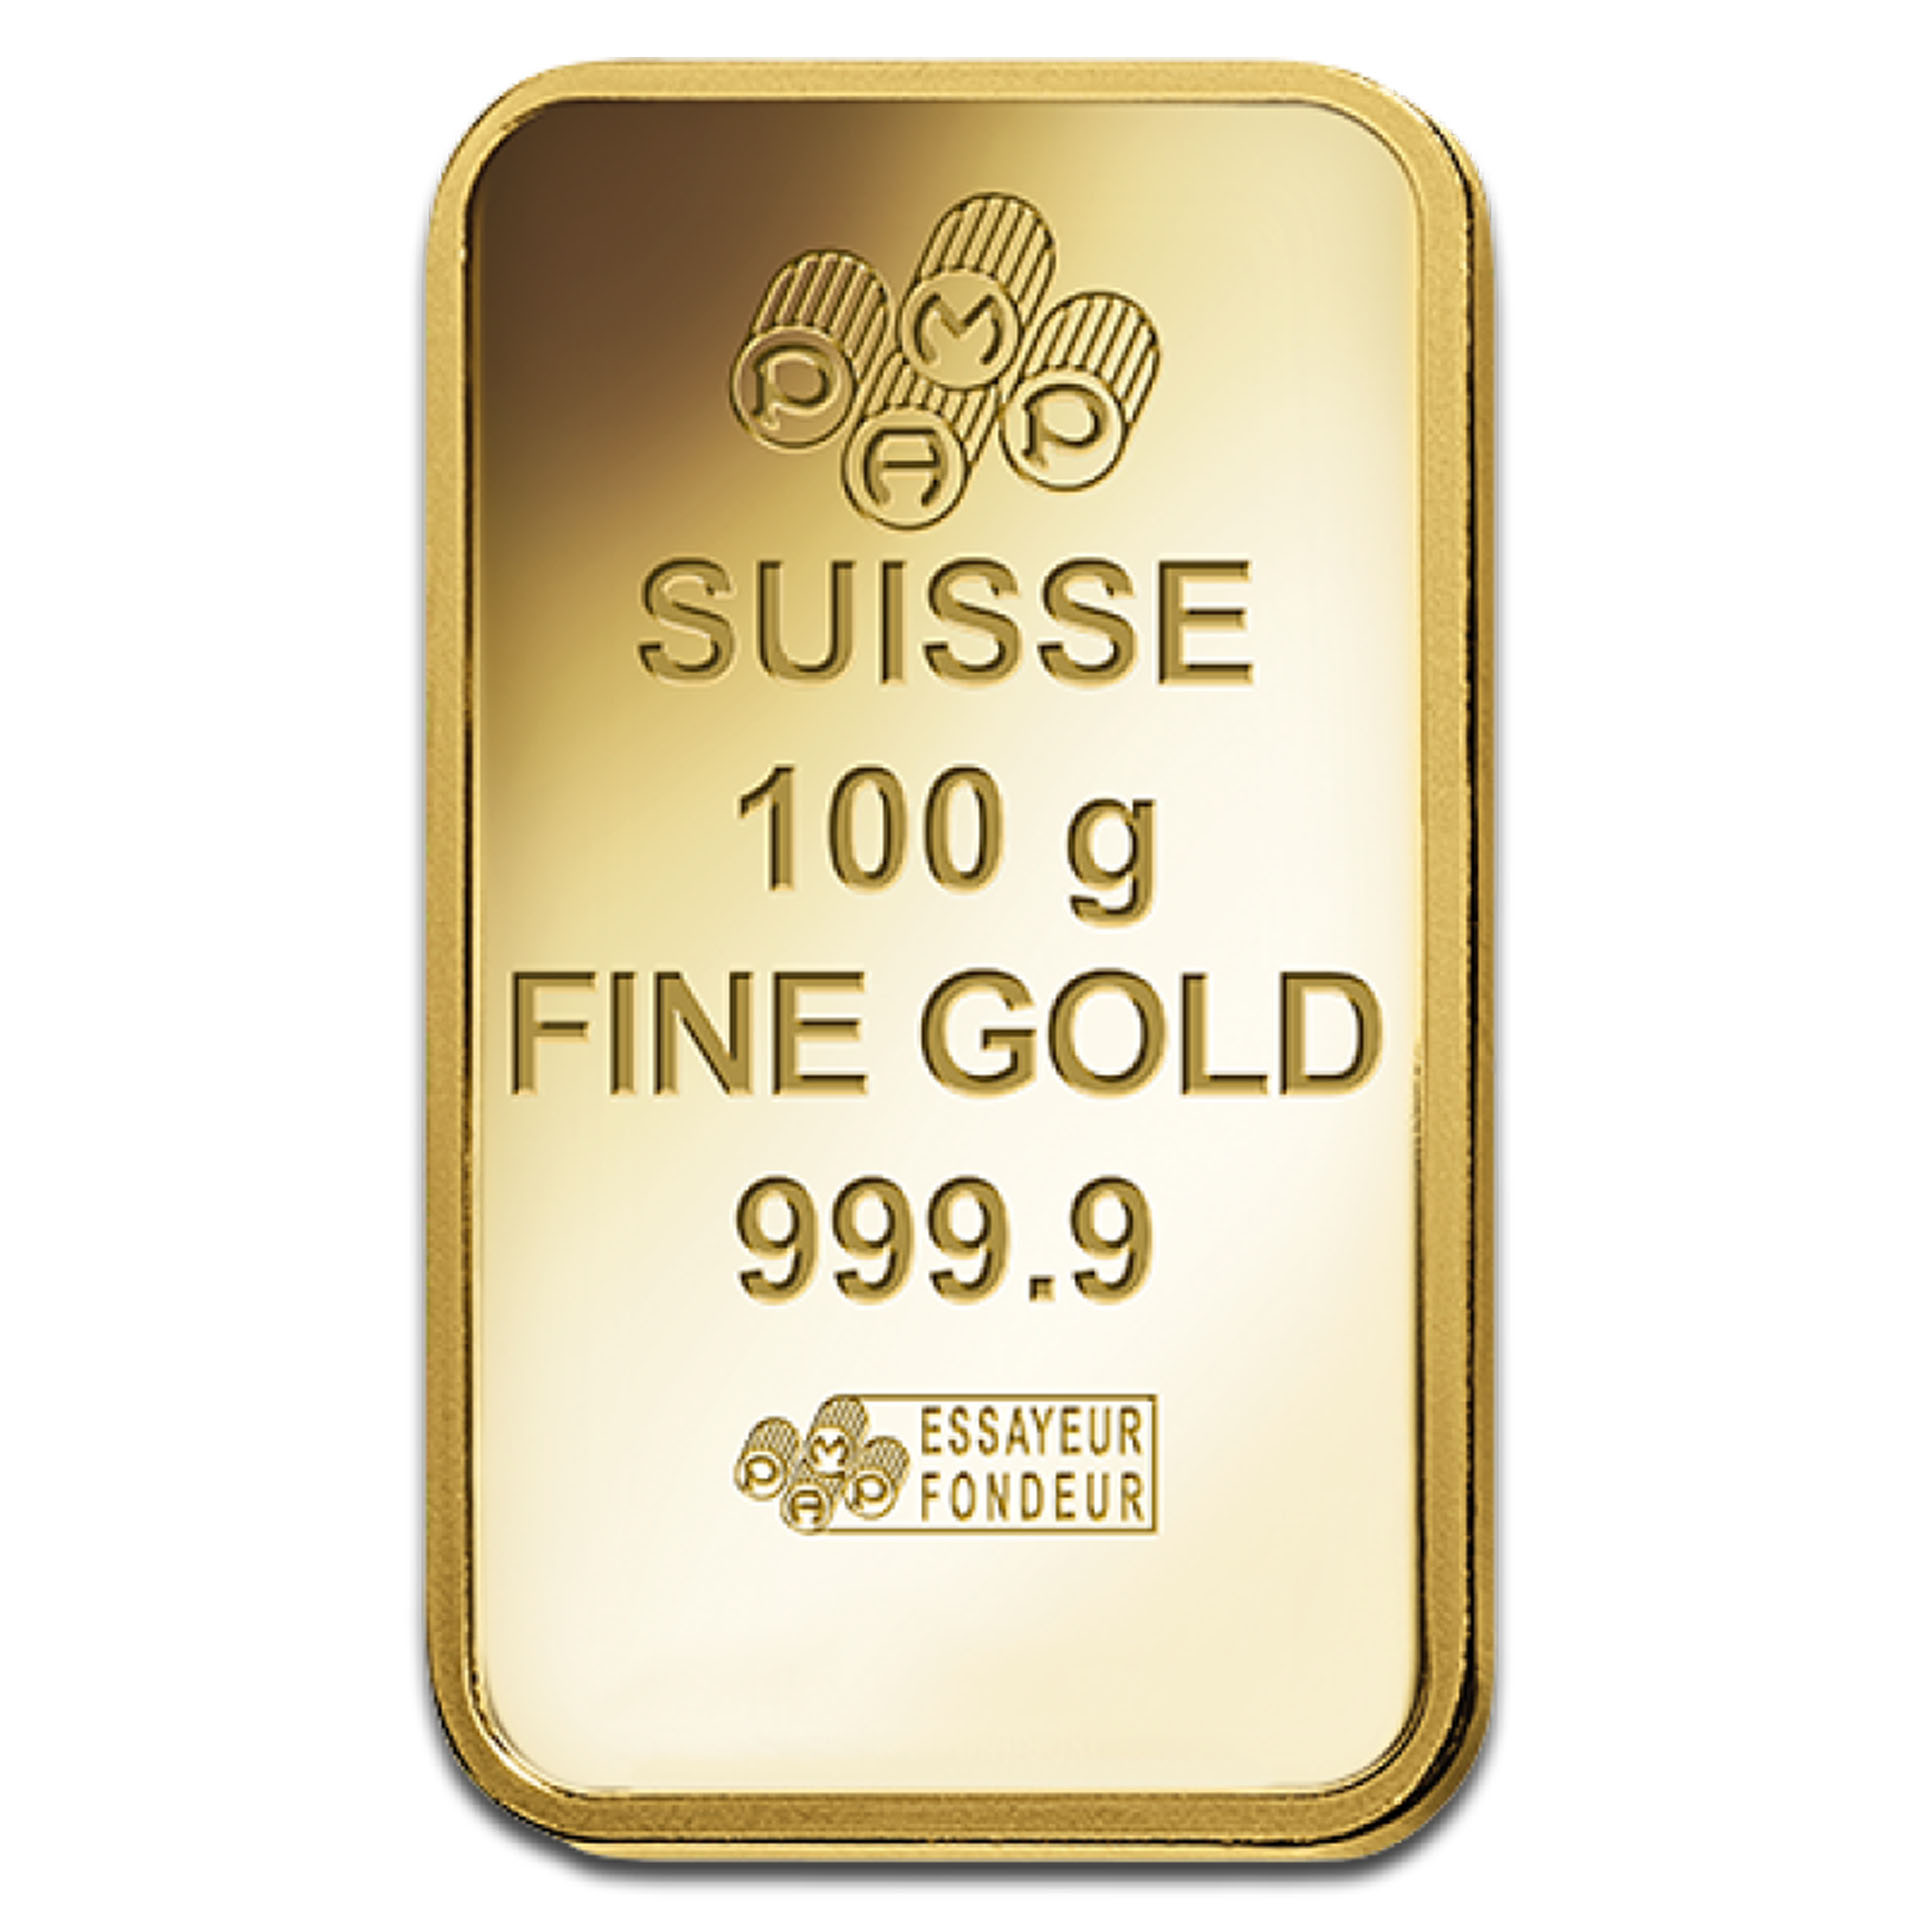 Золото 999 9. Suisse 10g Fine Silver 999.9 белое золото. Suisse 10g Fine Gold 999.9 кулон. Слиток золота 999. 999.9 Fine Gold кулон серебро.